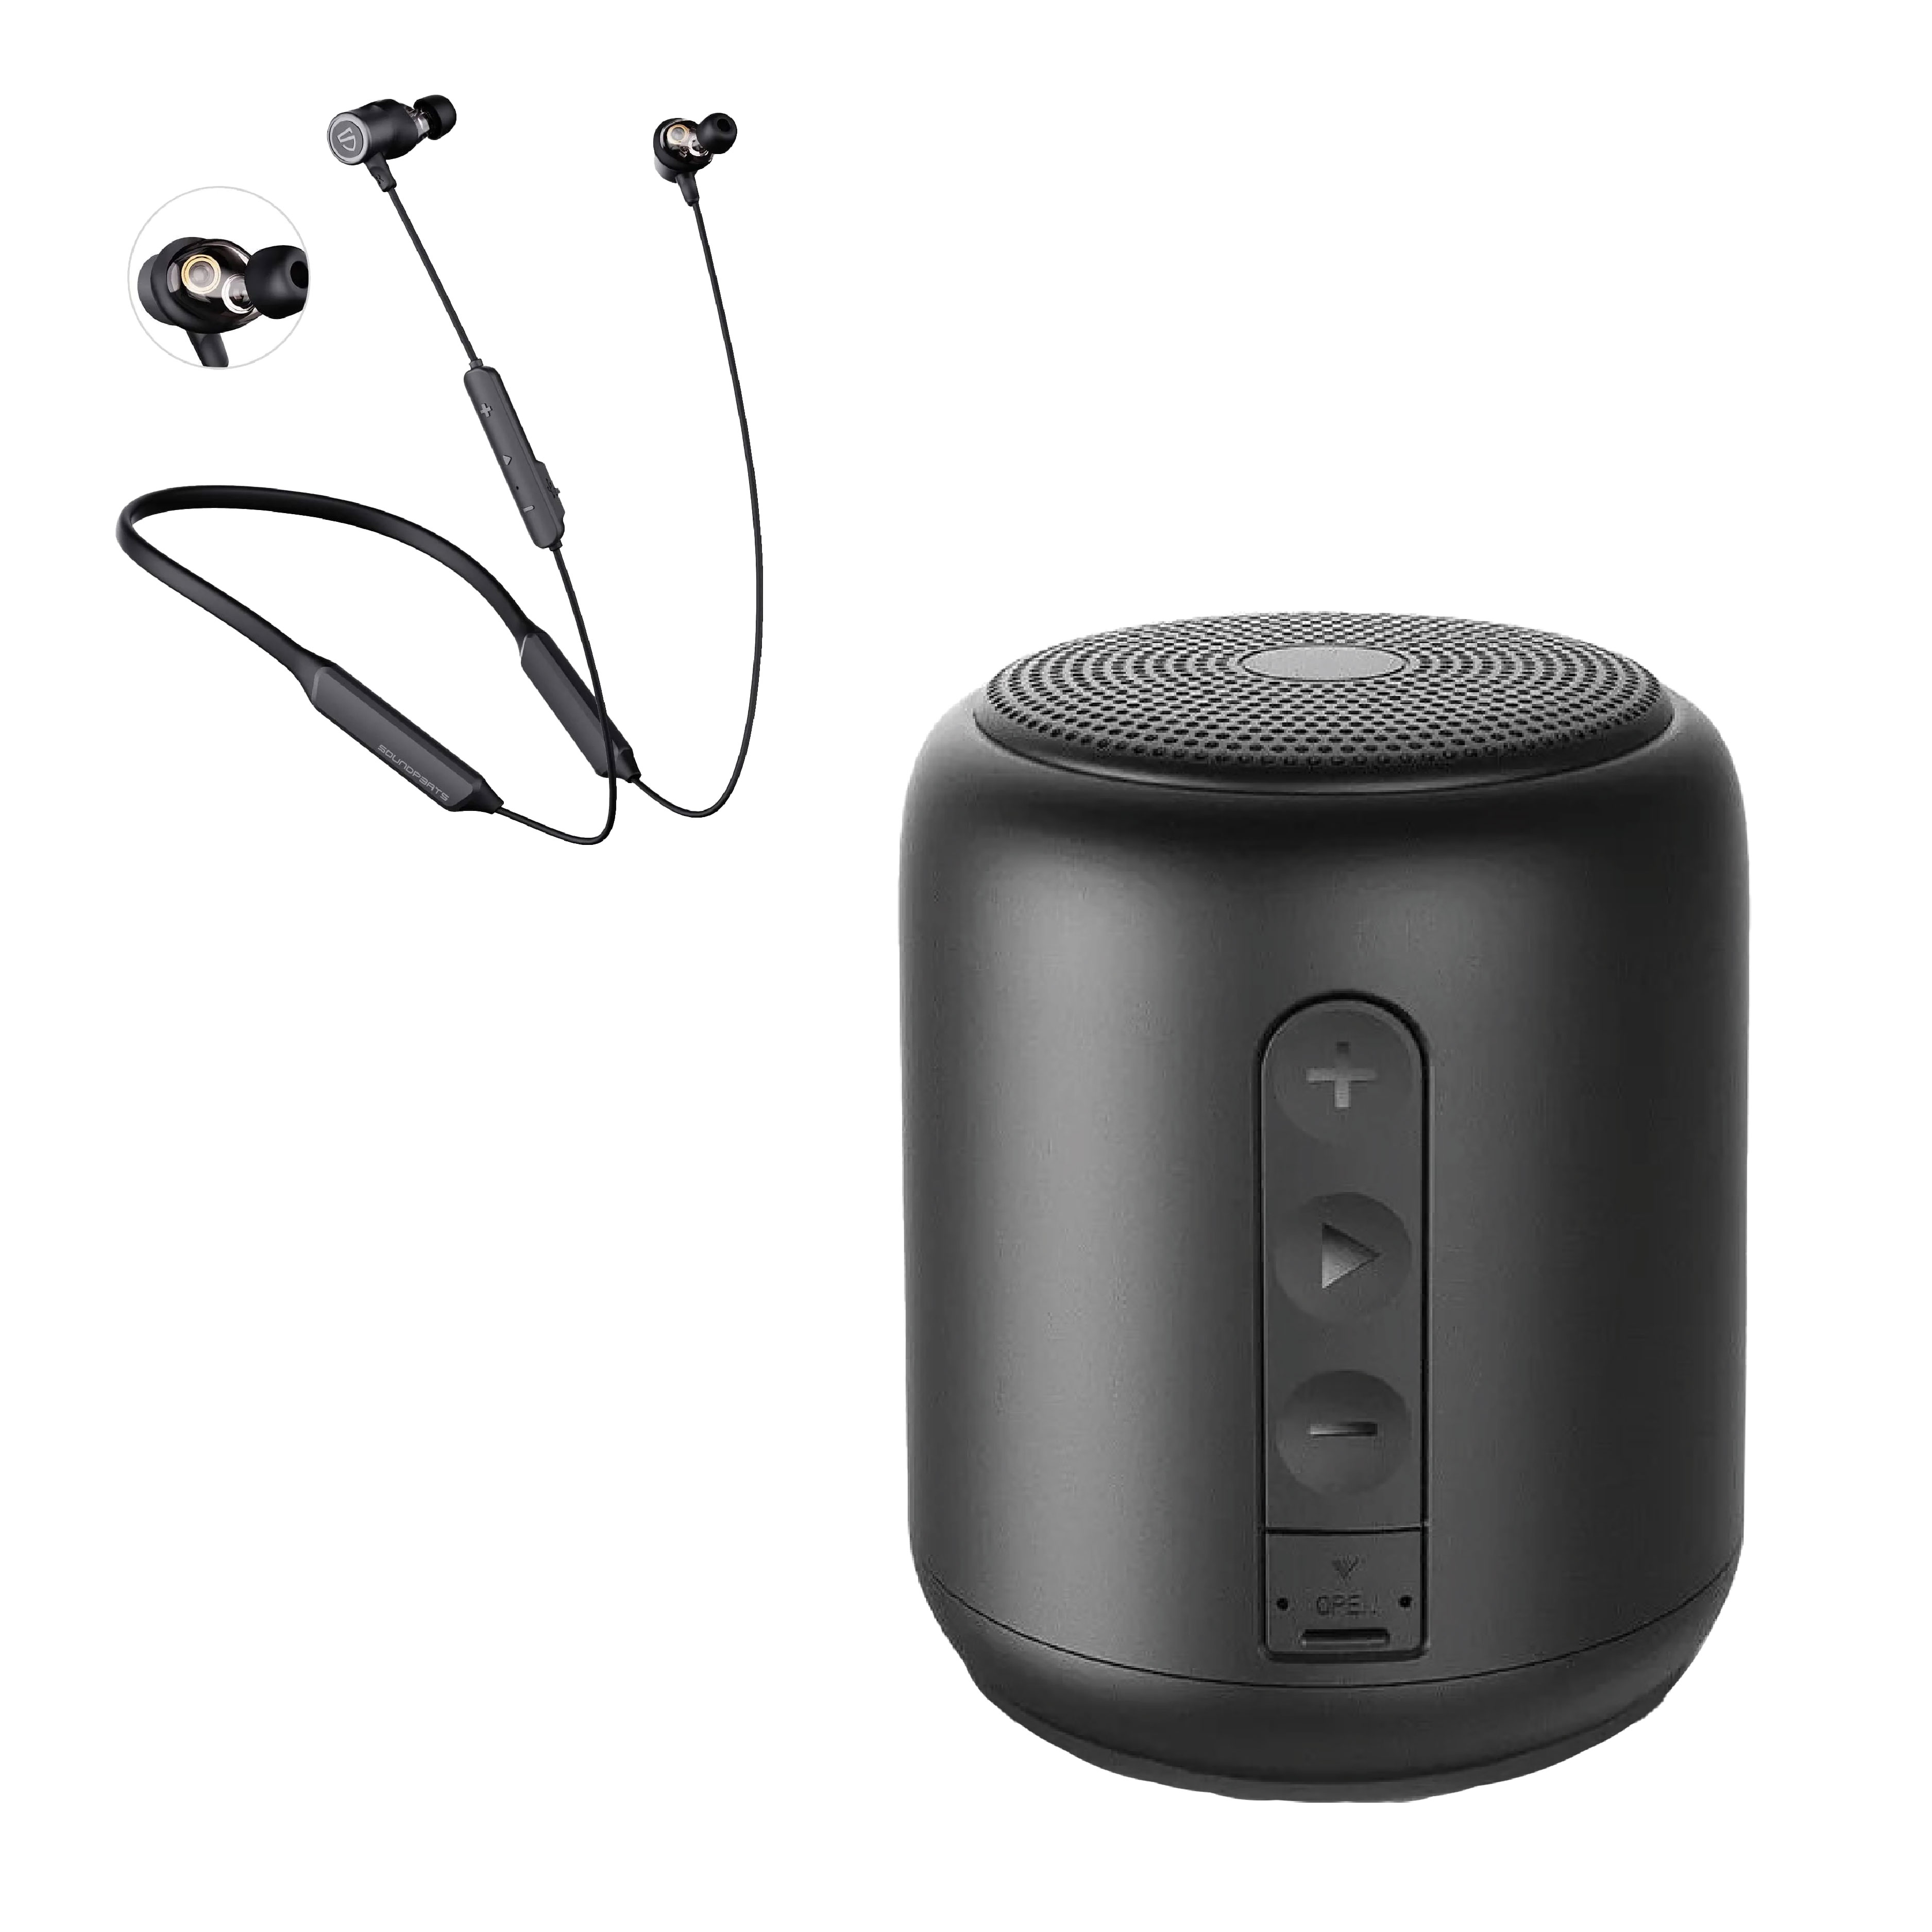 Bluetooth Speaker or Bluetooth Headphone